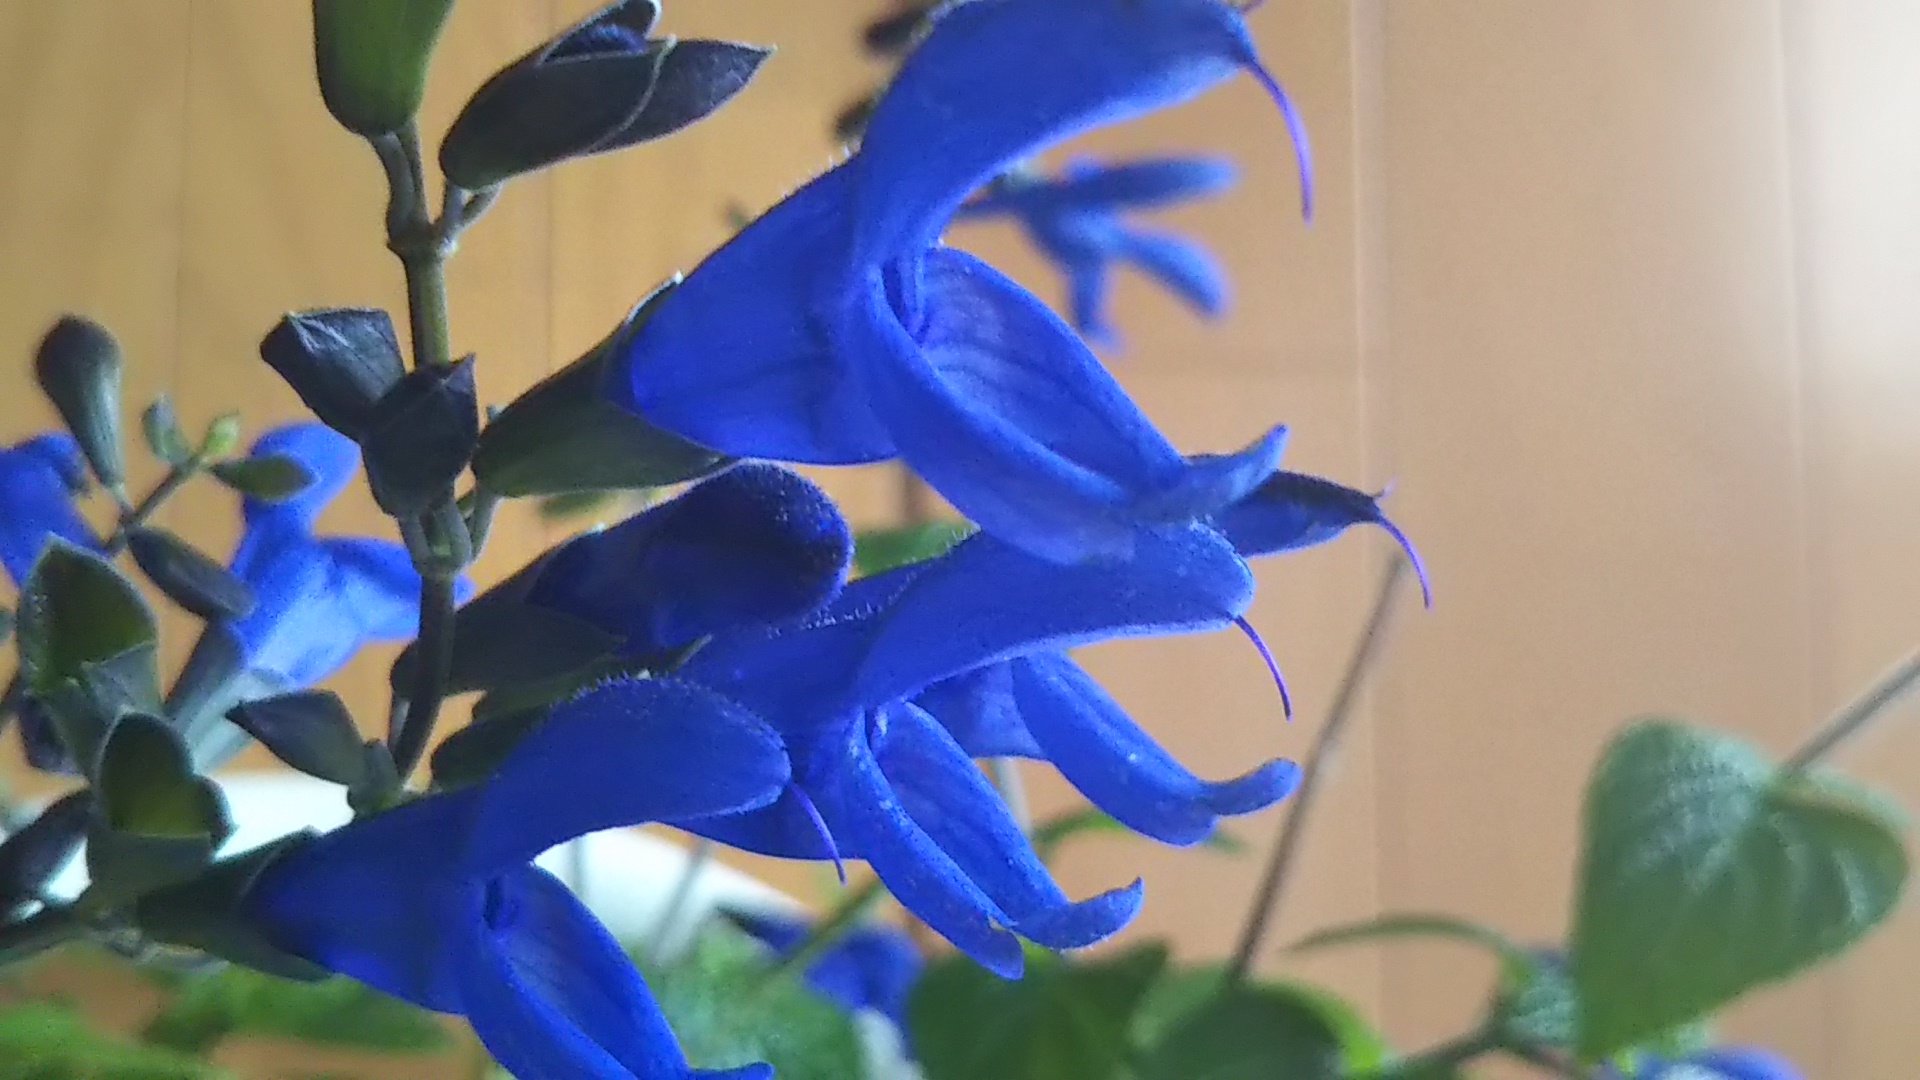 ひなた 青い花に惹かれます セージは種類が多く小花だけれど メドーセージの濃いブルーは 綺麗です 花が好き メドーセージ ハーブ T Co Hguwispal7 Twitter